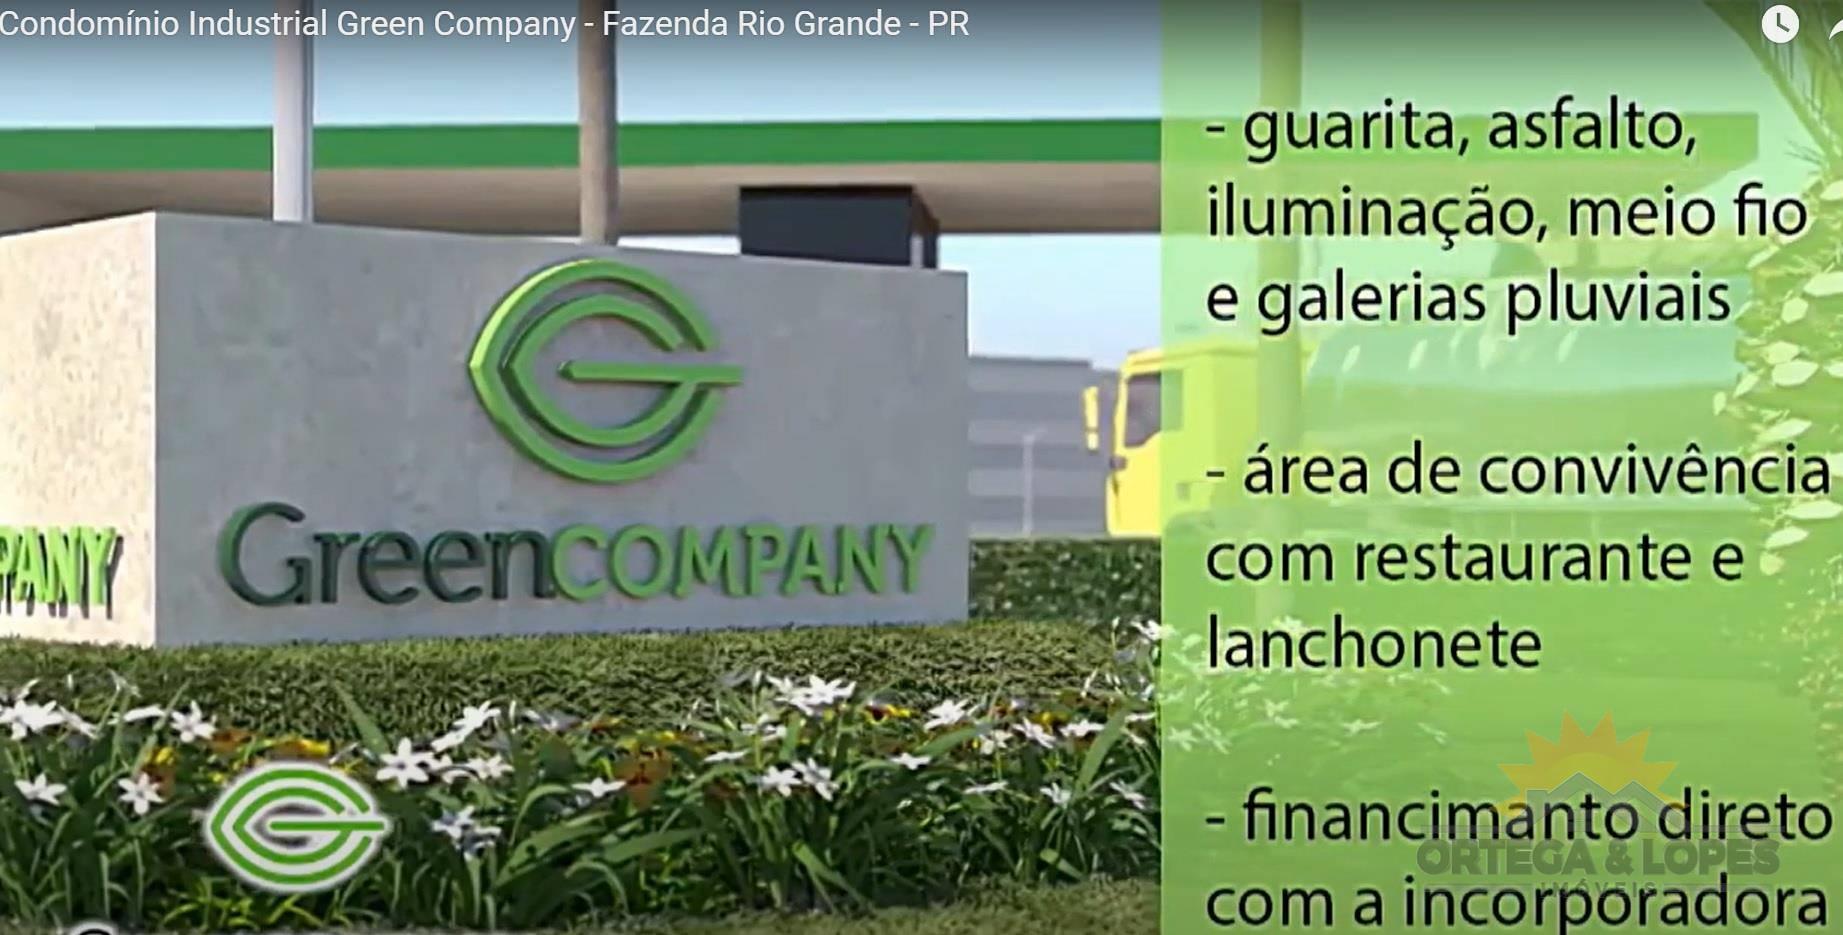 Terreno para venda no bairro Eucaliptos em Fazenda Rio Grande/PR com 2.100m² por R$ 730.000,00